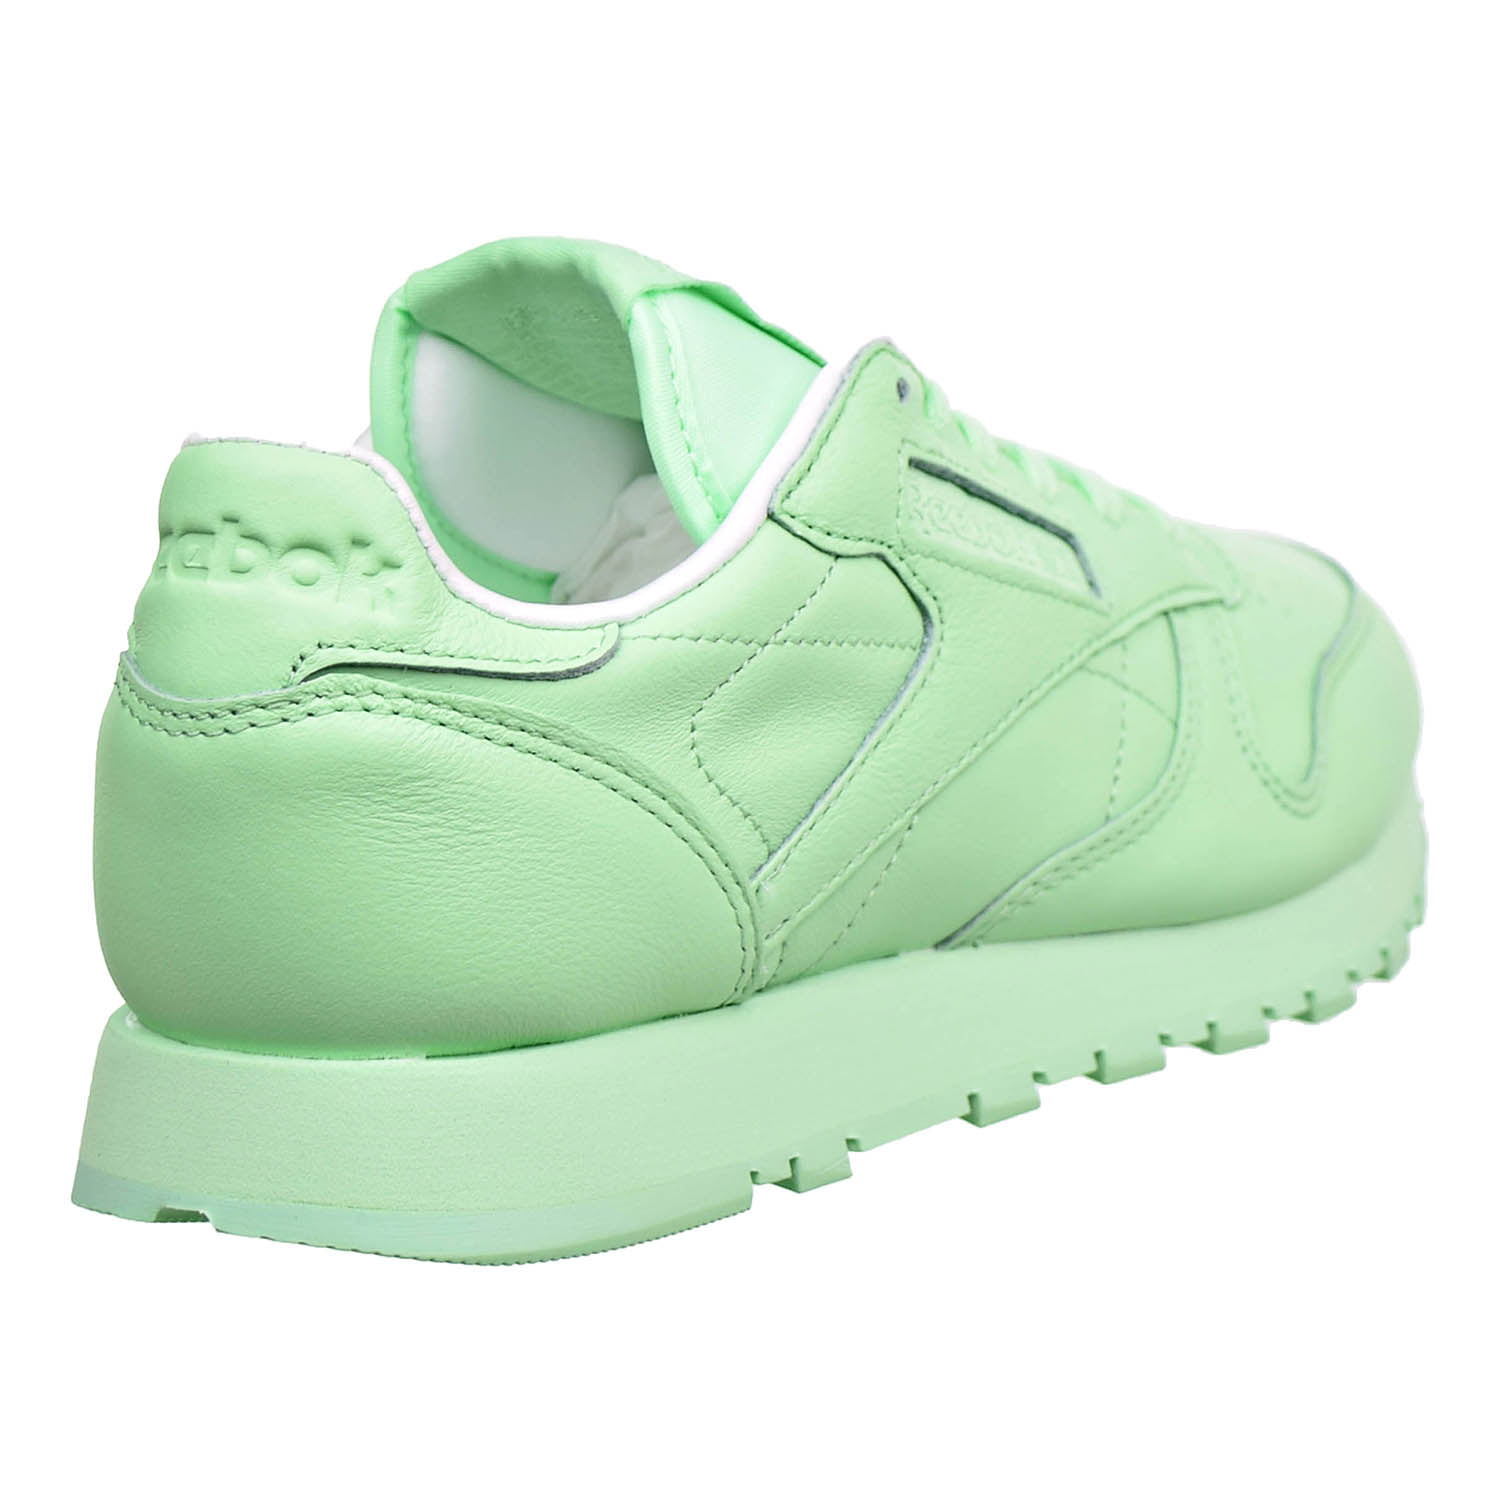 mint green sneakers womens